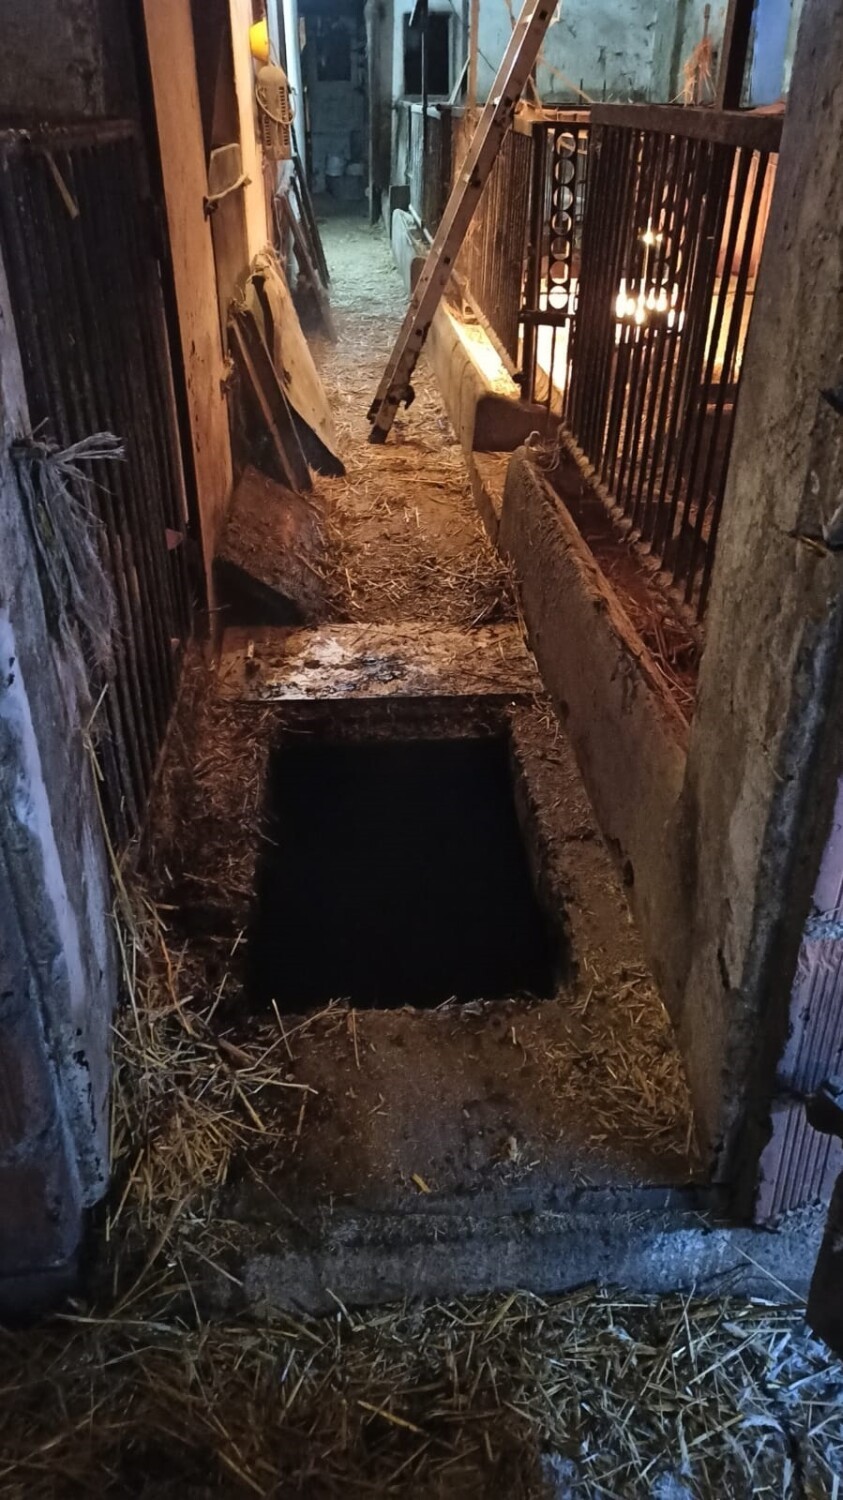 W Toporowie trzy małe prosiaczki wpadły do zbiornika na gnojowicę. Z pomocą przyszli strażacy